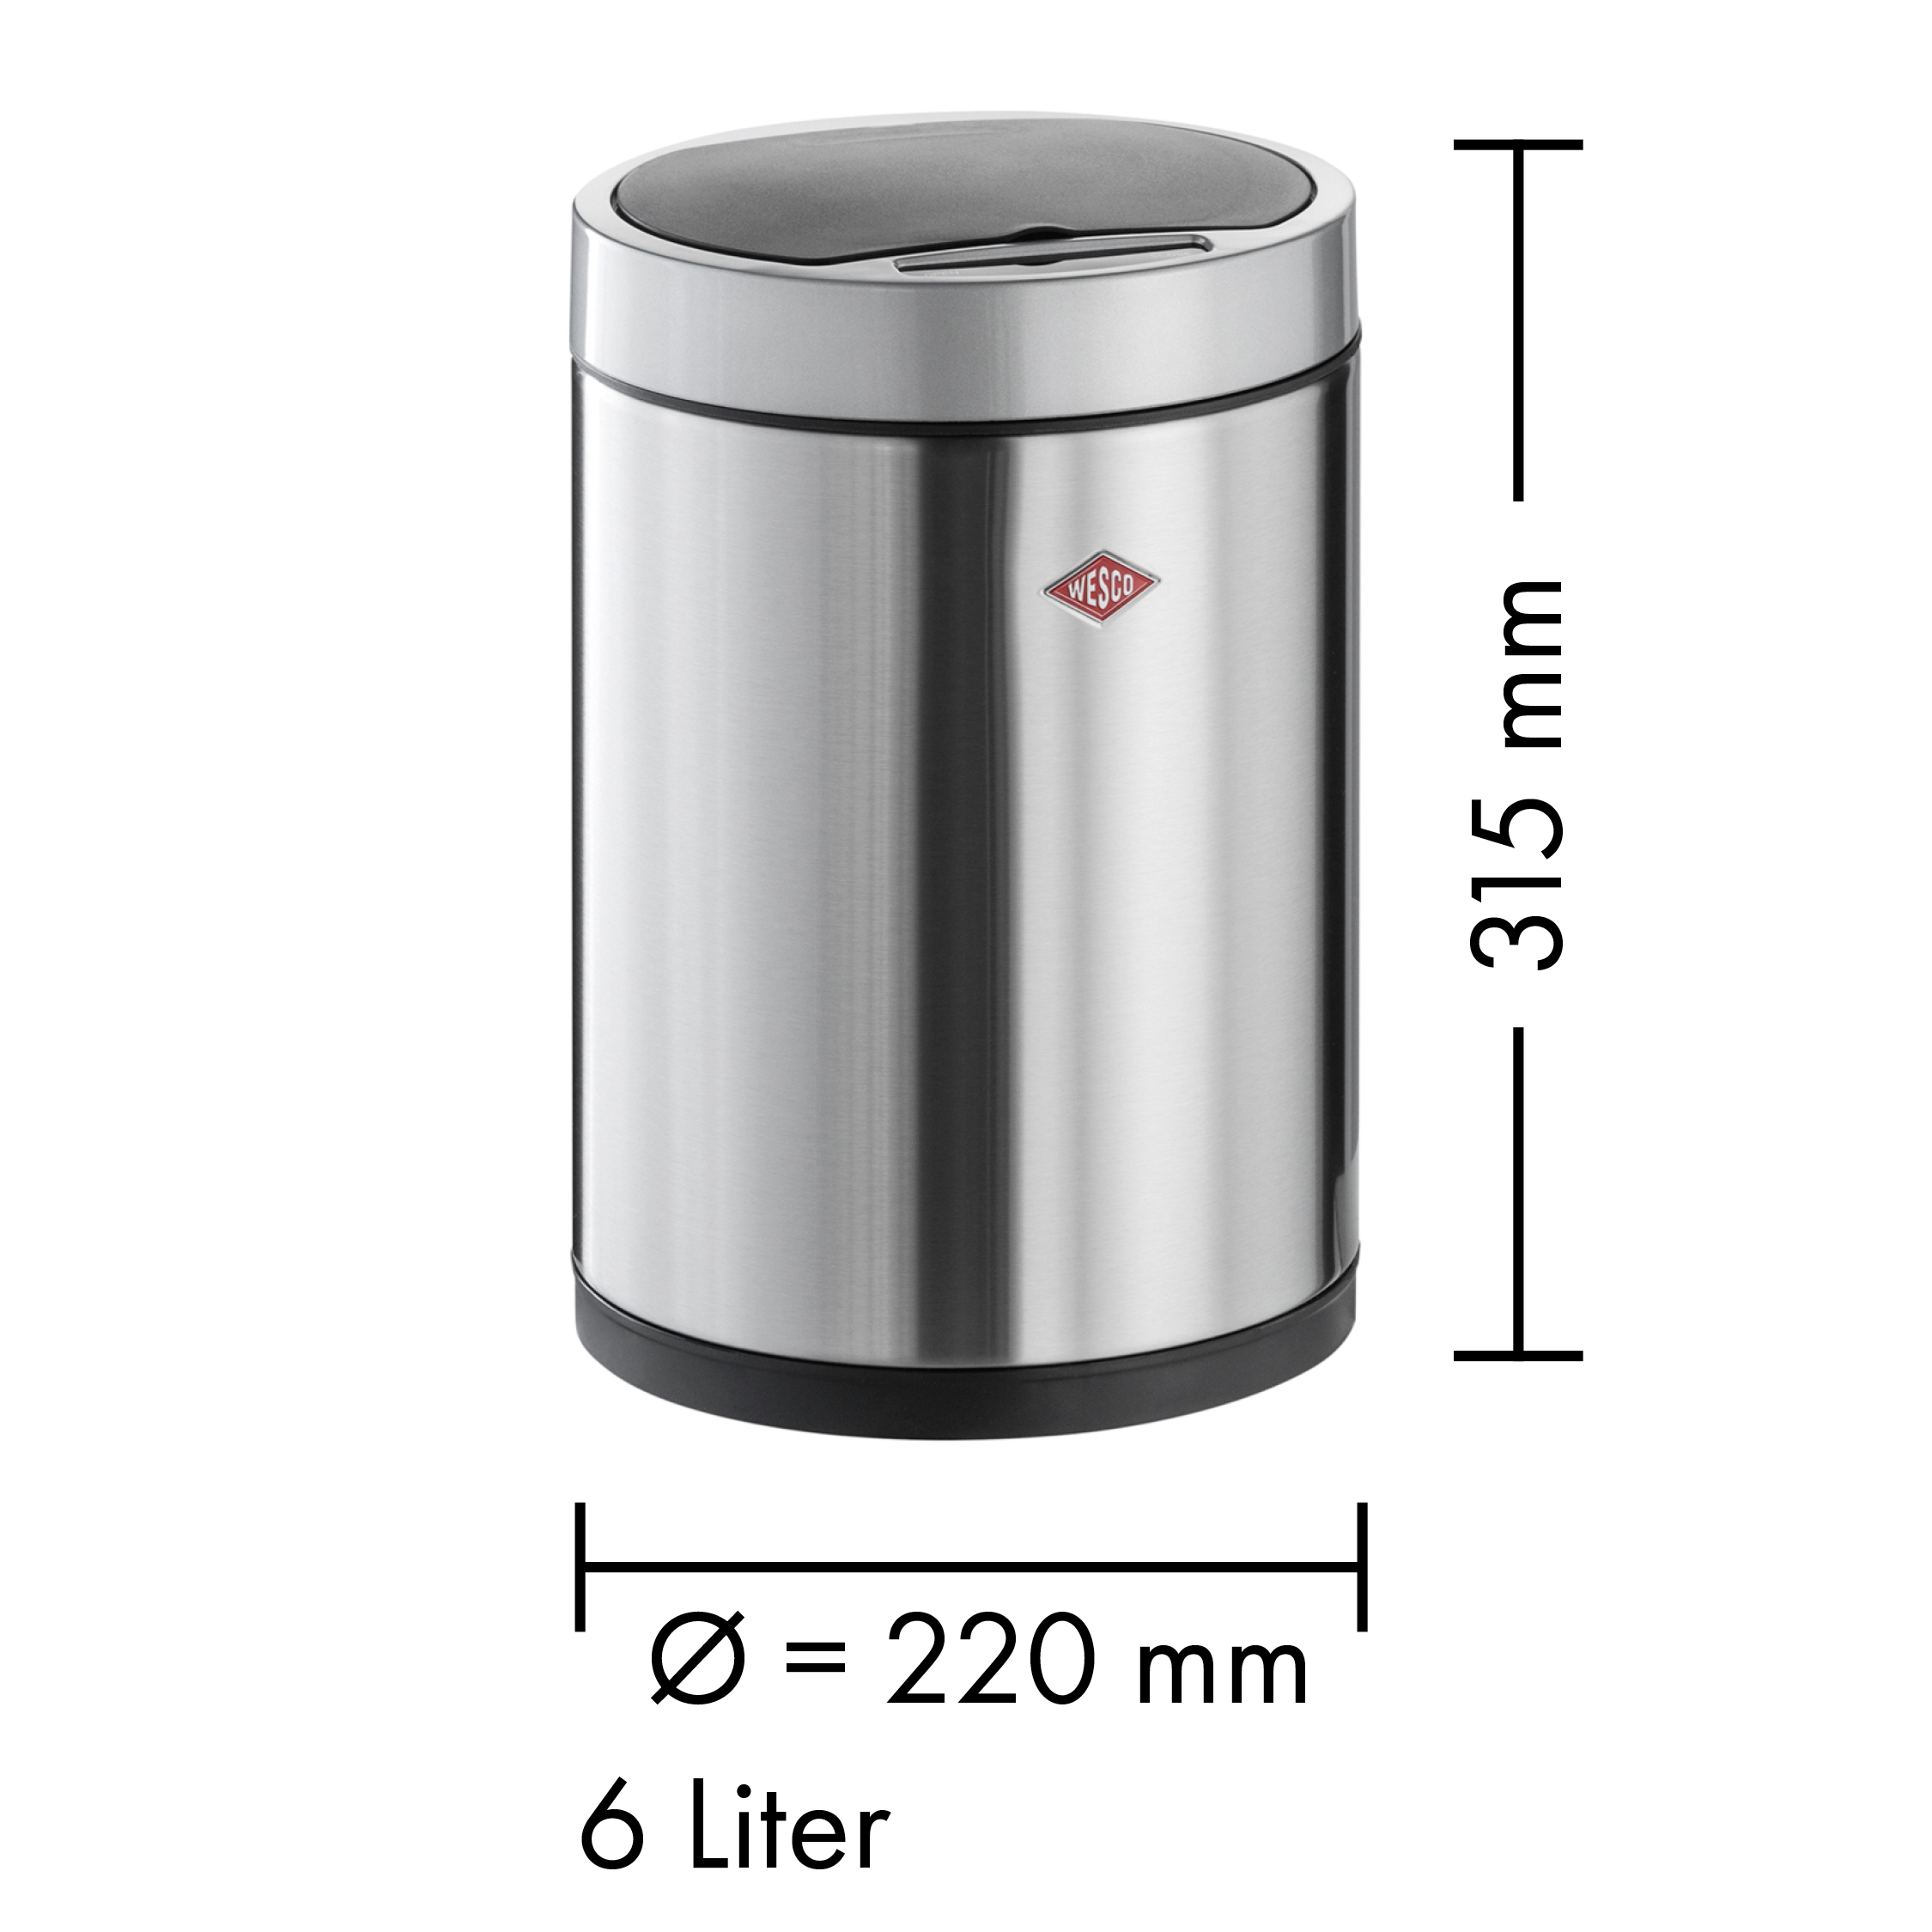 Abmessungen des Sensoreimers i.master round 6 Liter aus Edelstahl